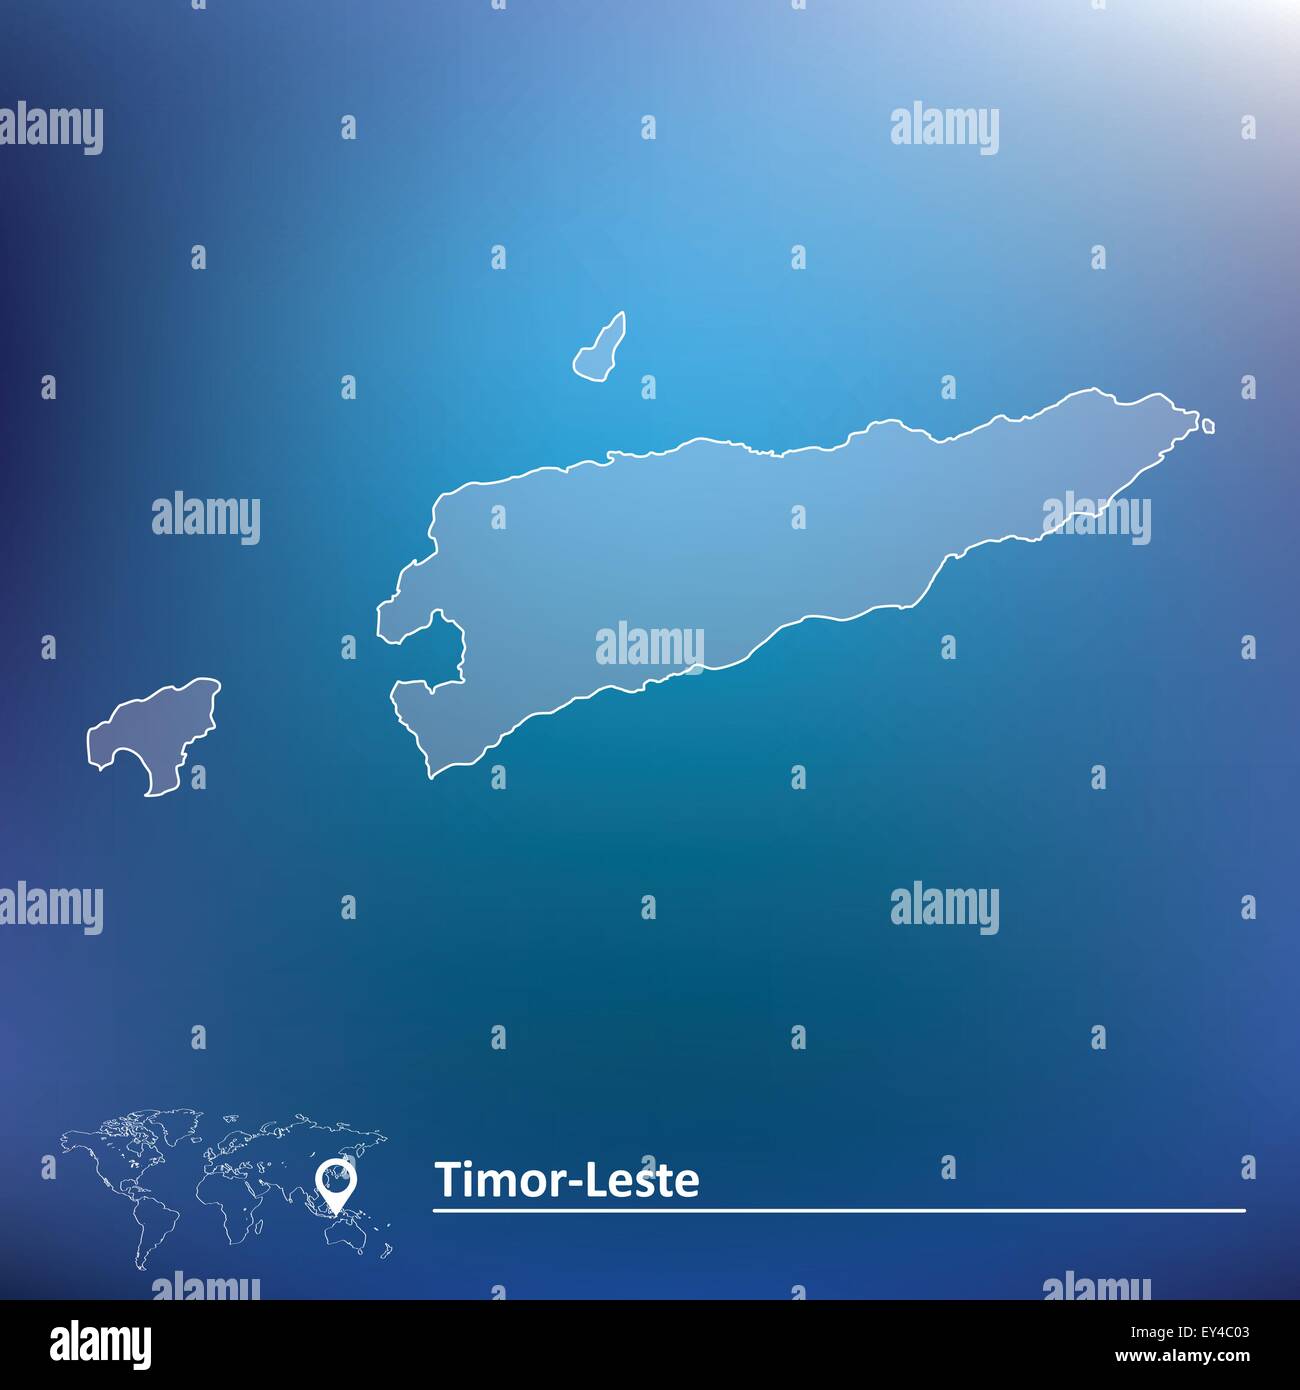 Map of Timor-Leste - vector illustration Stock Vector